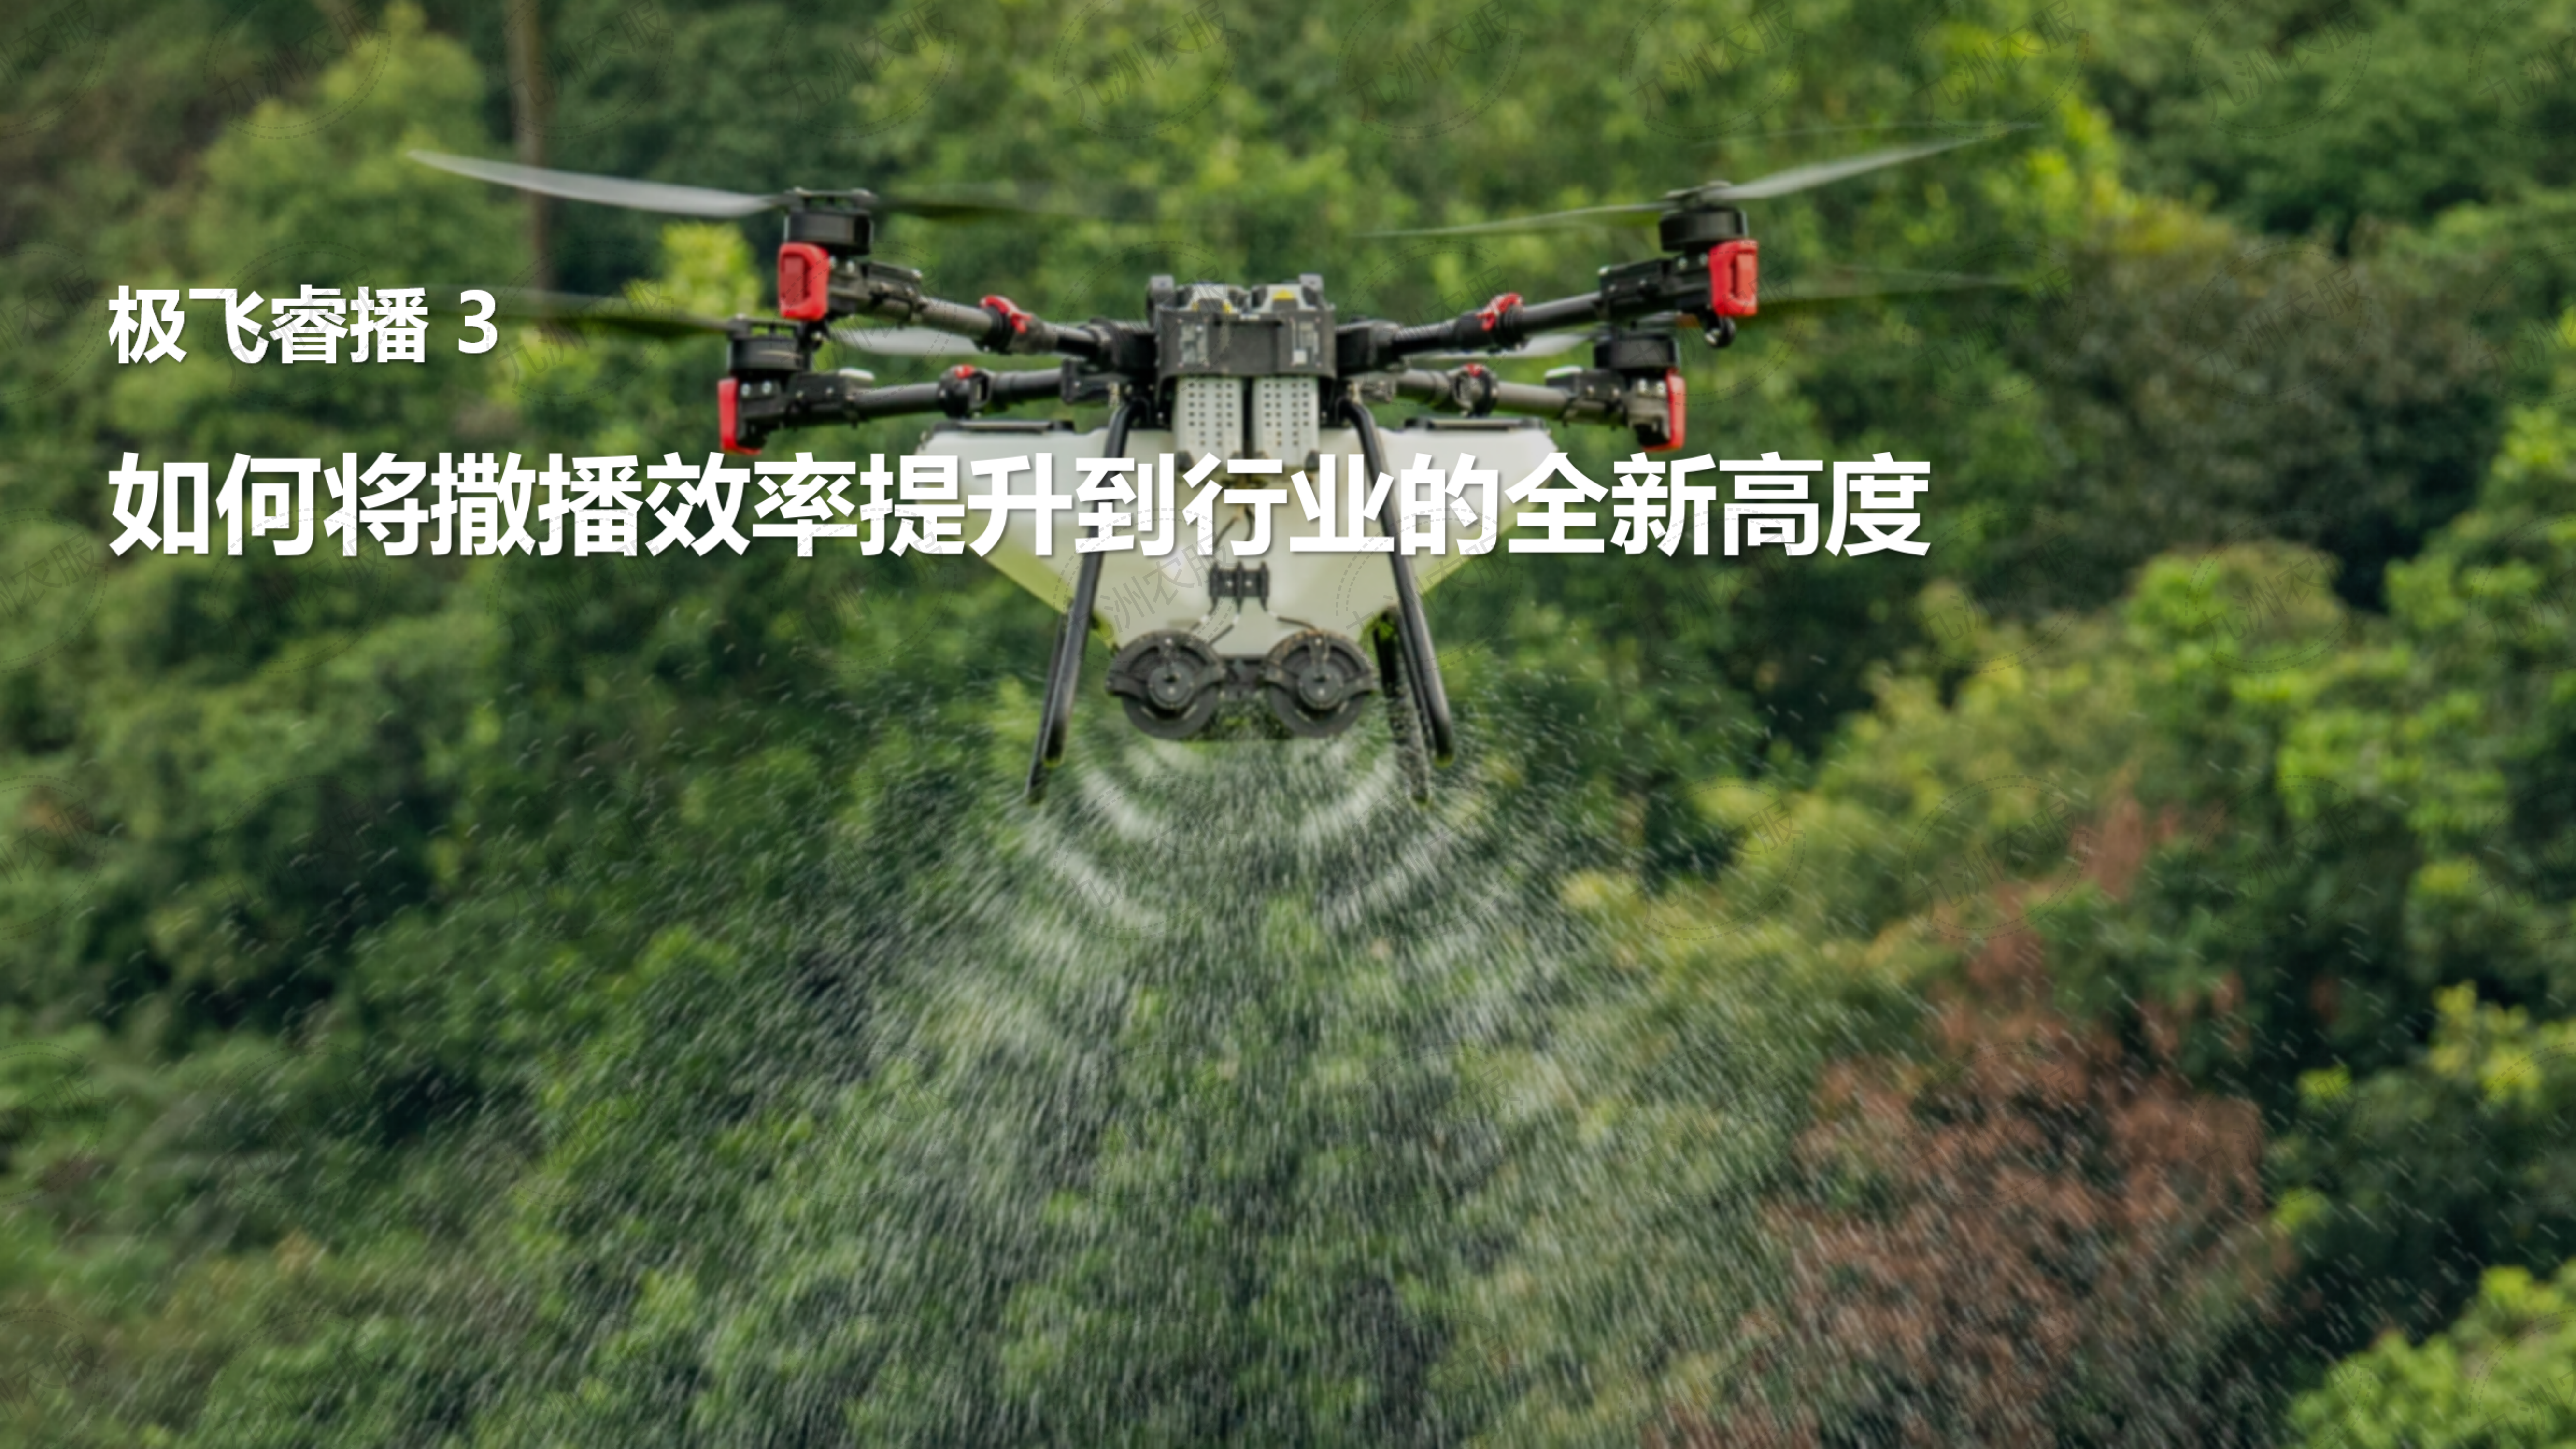 極飛 P100 Pro 農業無人飛機推介會課件_14.png